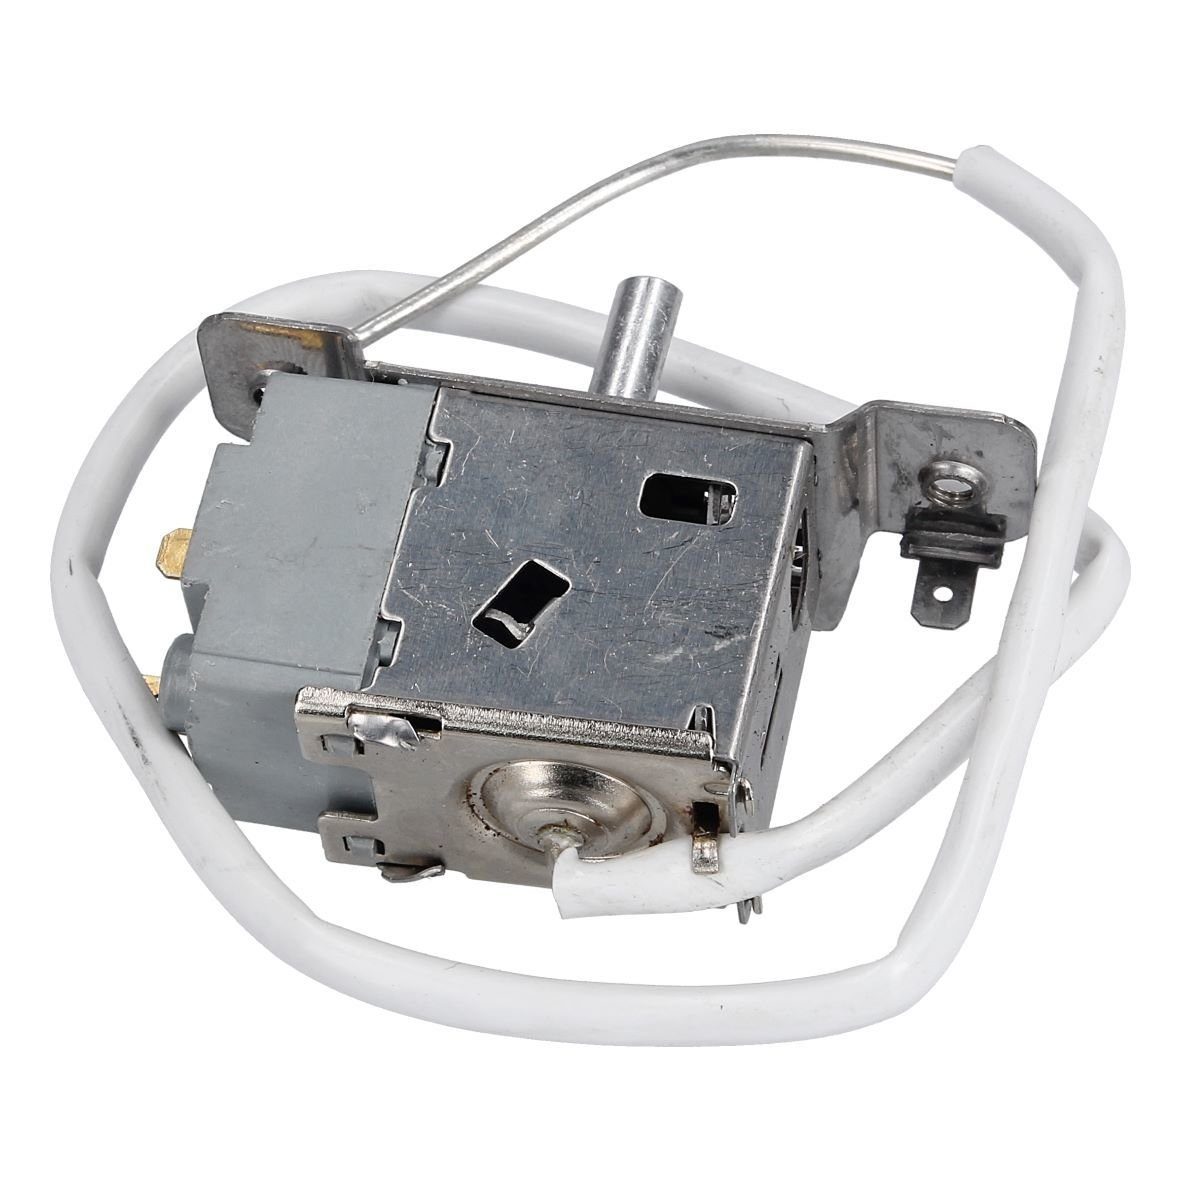 Thermostat wie HK1093336, easyPART Hisense / Gefrierschrank Hisense HK1093336 Thermodetektor Kühlschrank